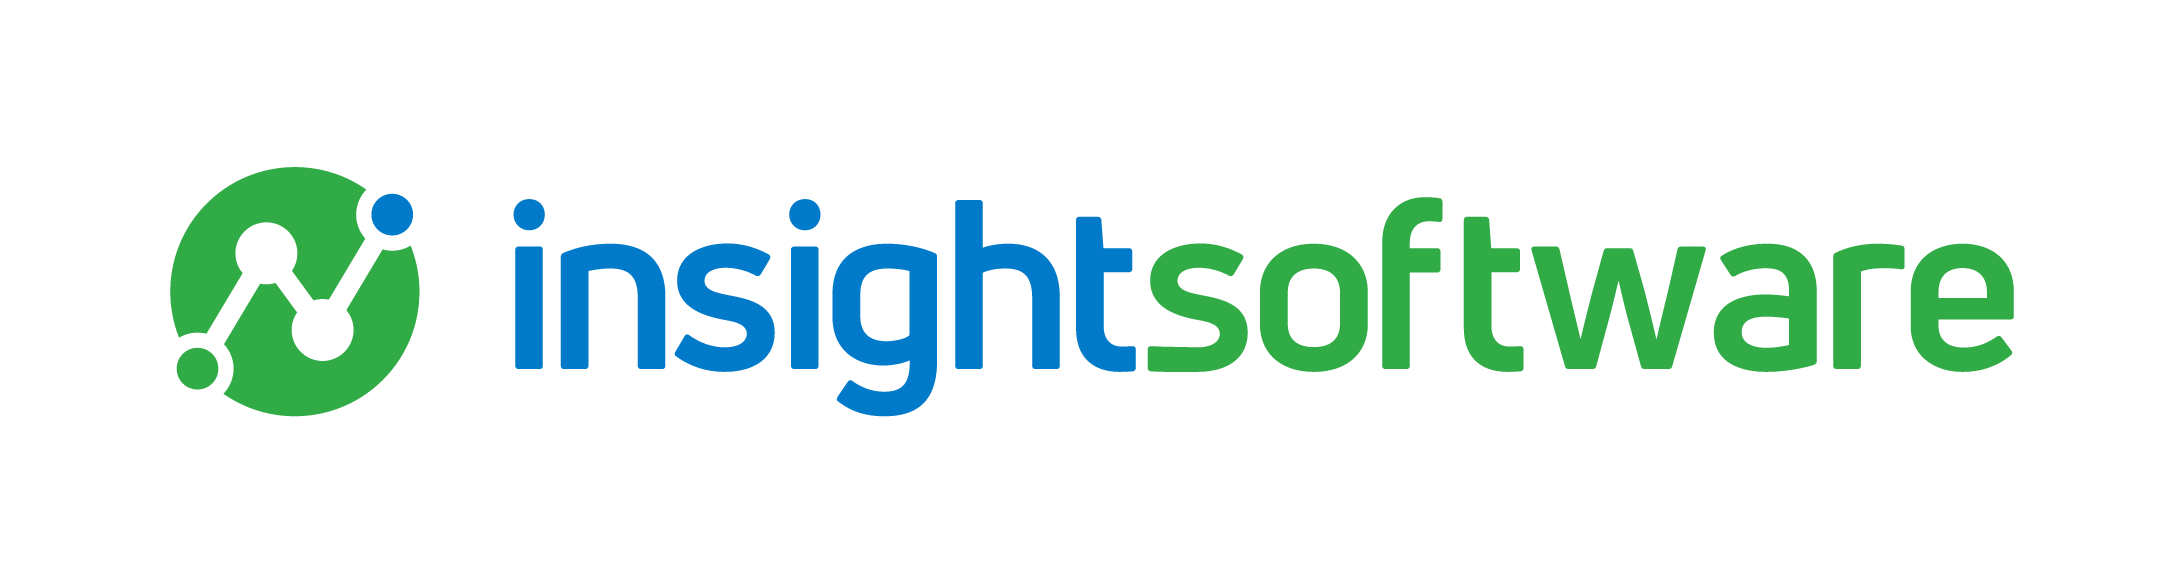 insightsoftware Acqu